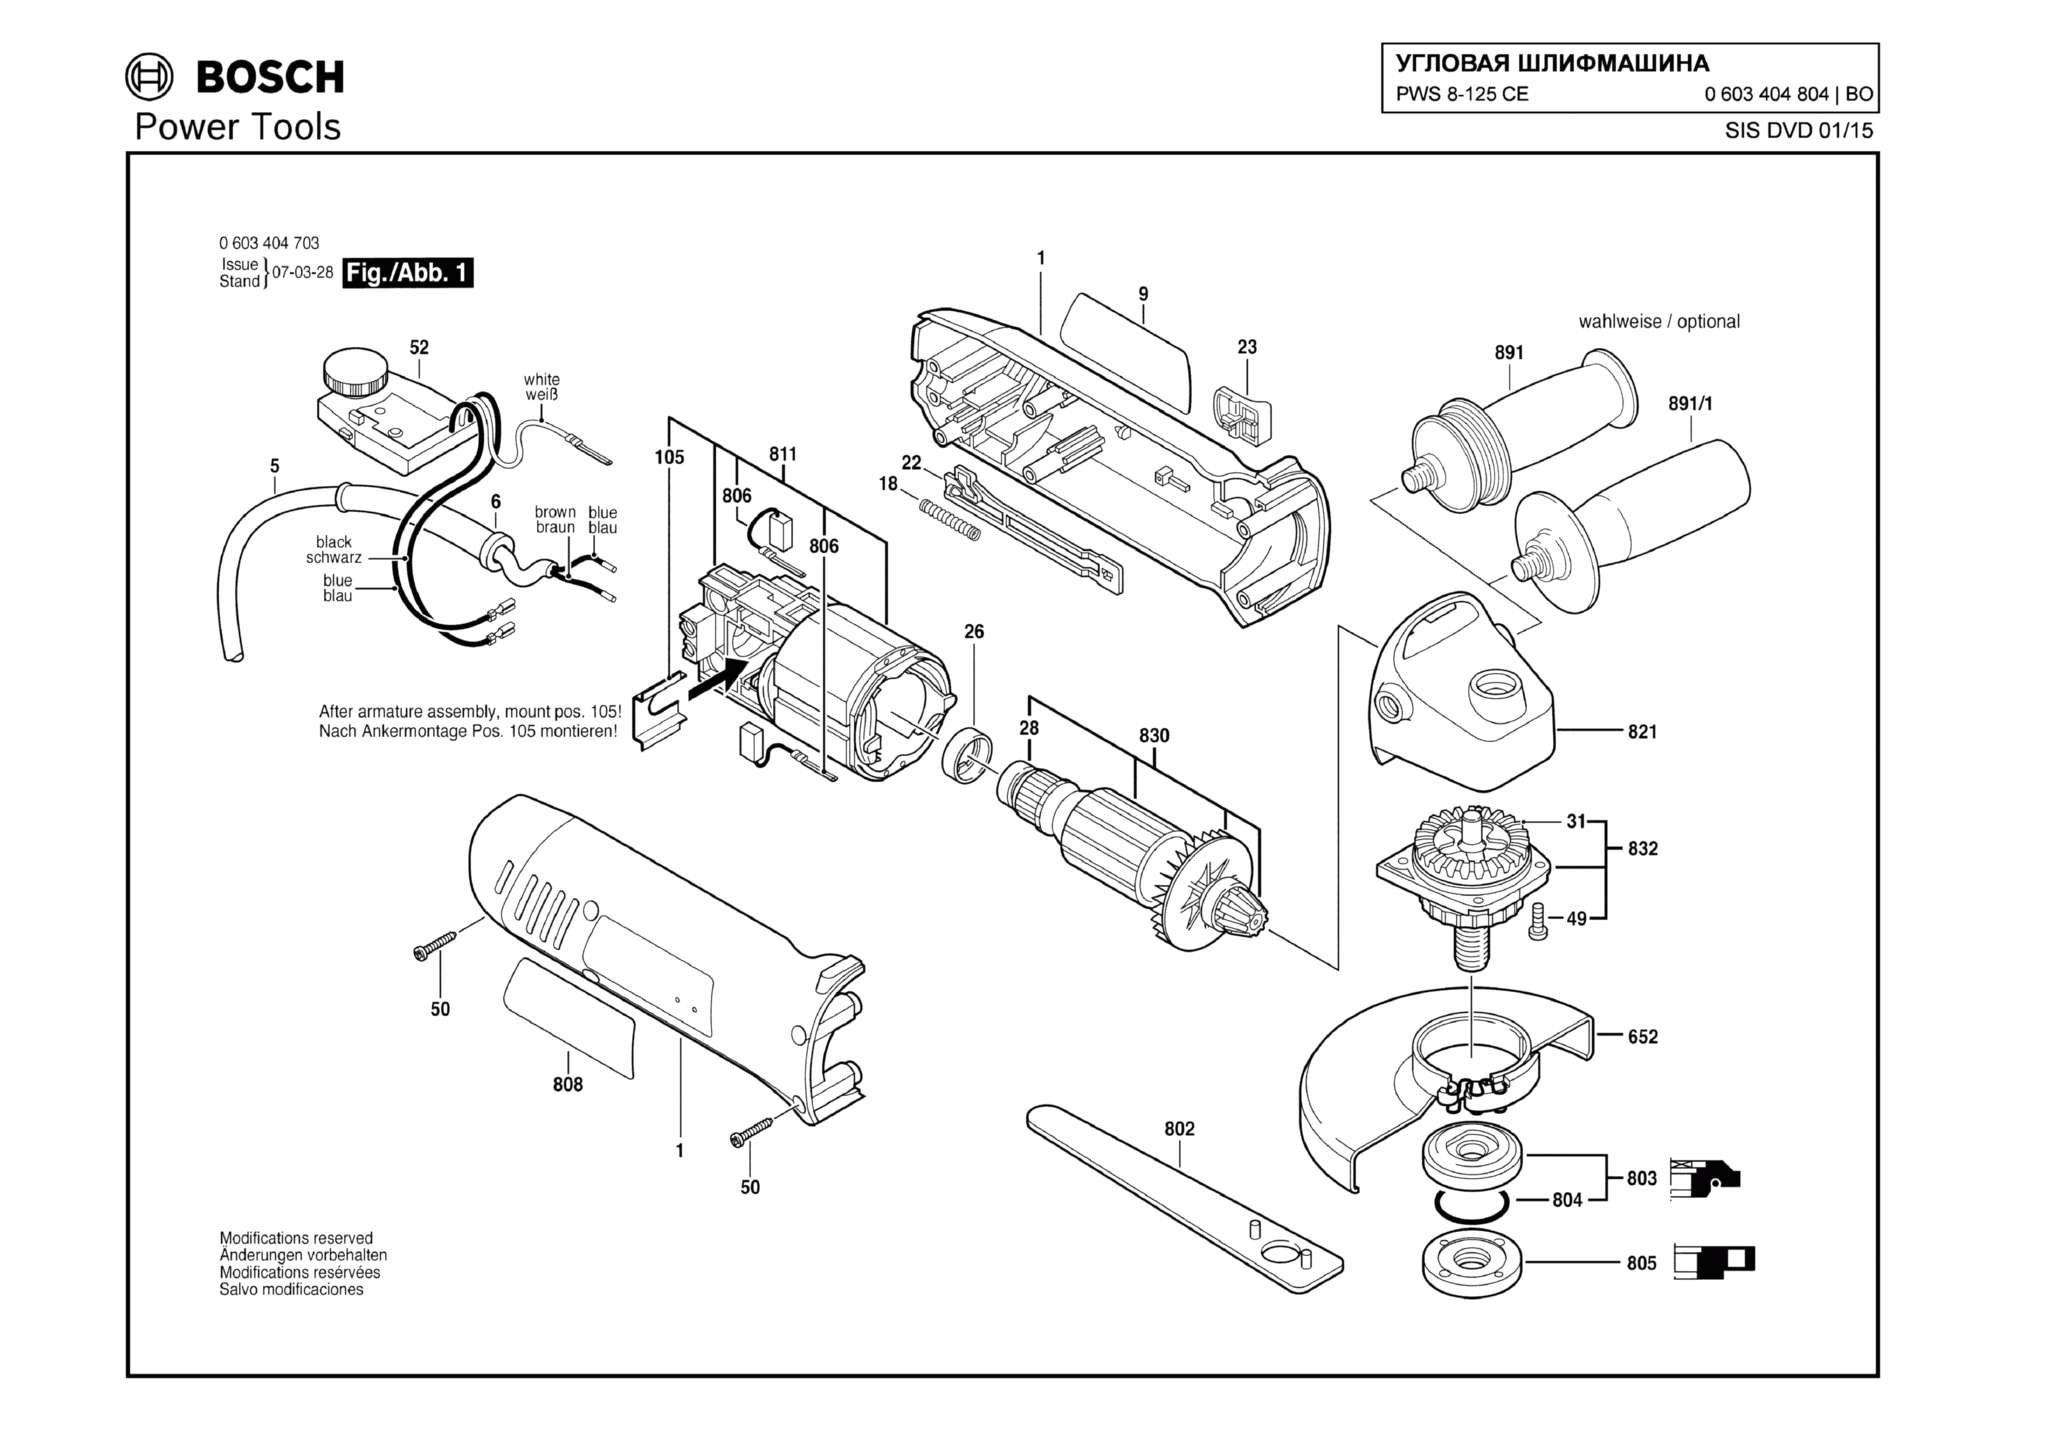 Запчасти, схема и деталировка Bosch PWS 8-125 CE (ТИП 0603404804)